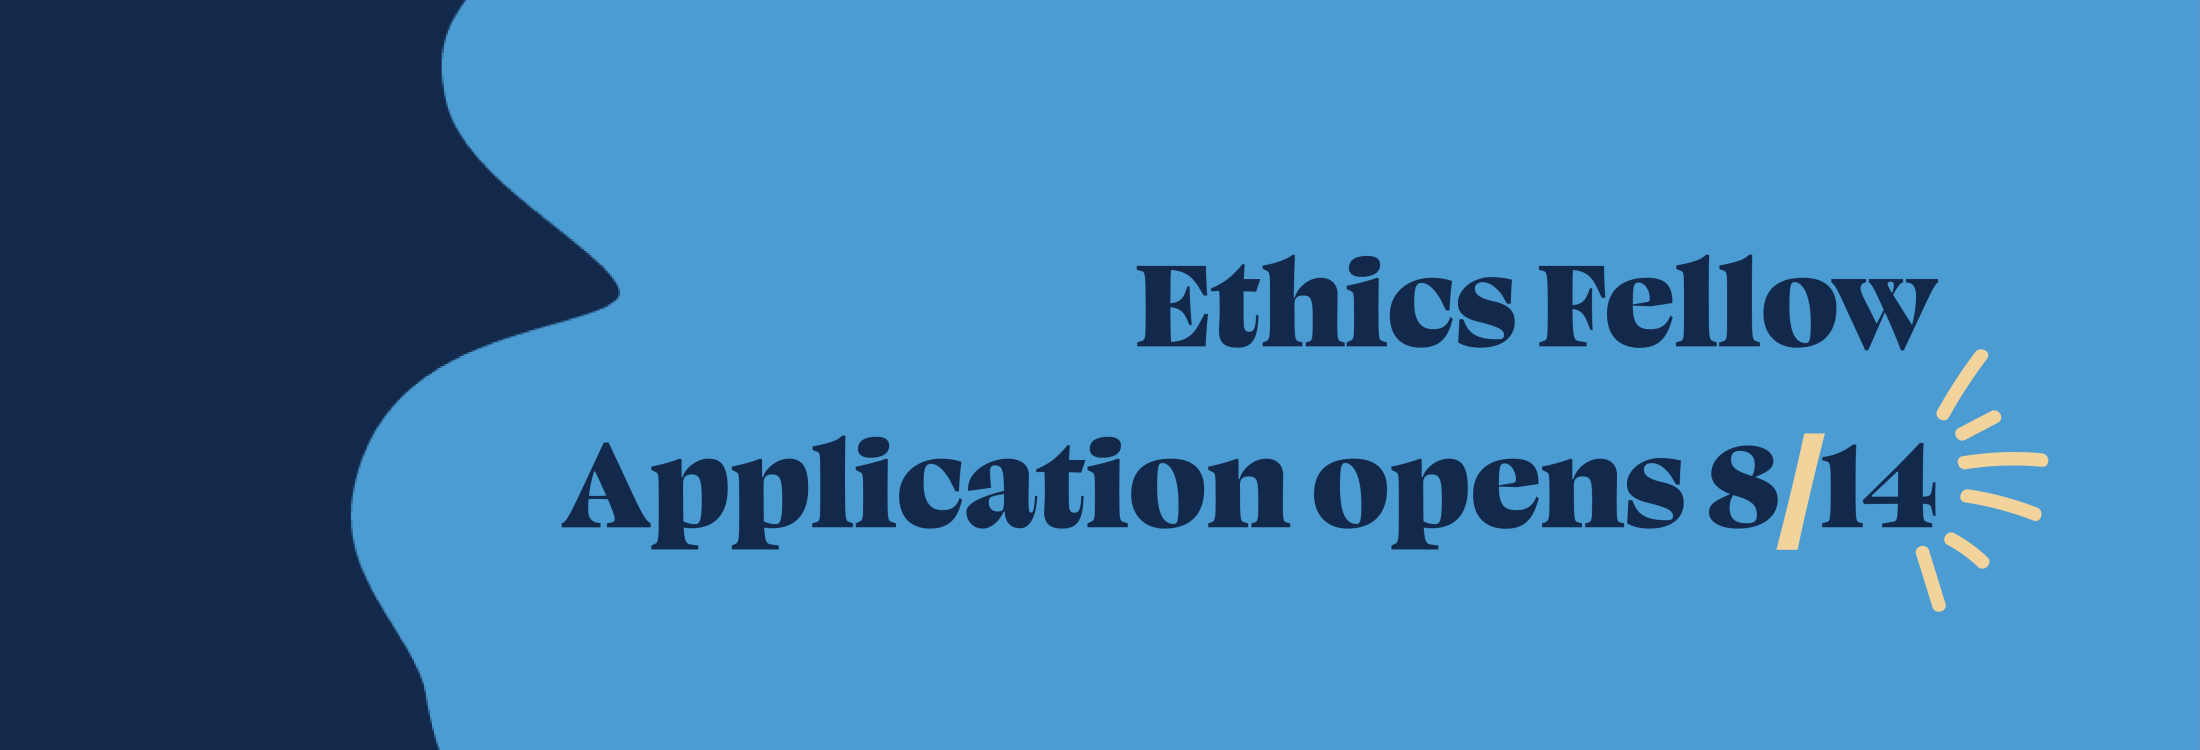 Ethics Fellow_Banner